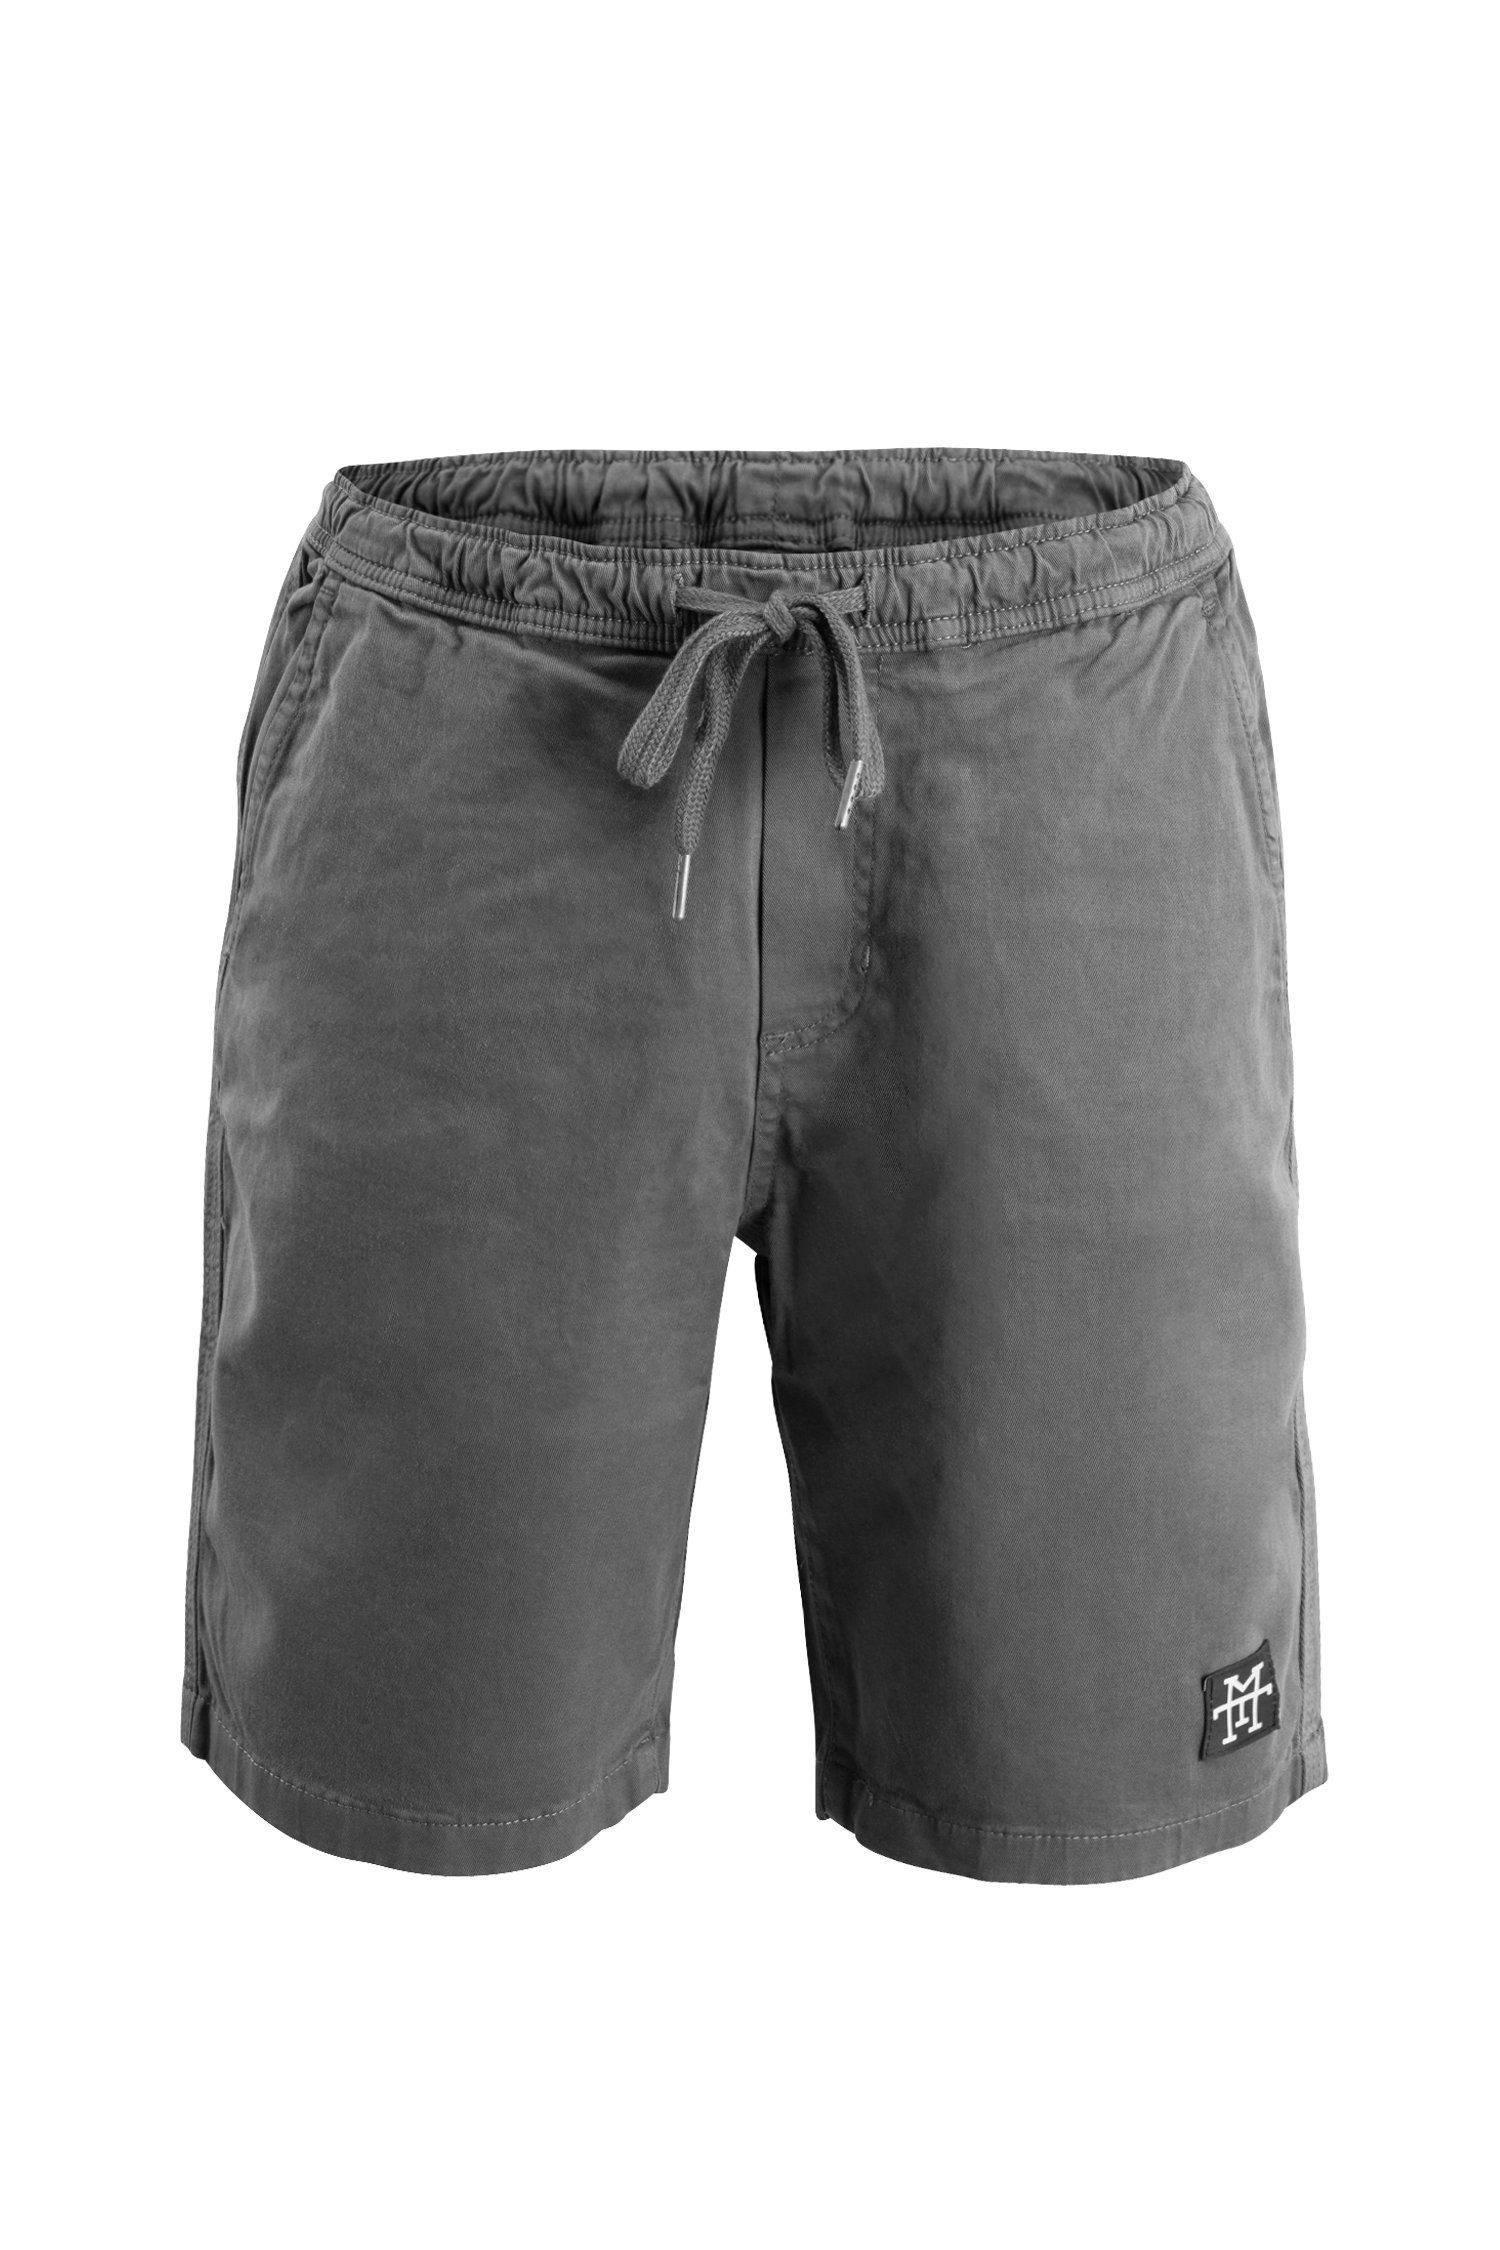 Manufaktur13 Chinoshorts Chino Shorts - Kurze Hose aus dehnbarem Stretch Twill mit Kordelzug / Tunnelzug Dark Grey